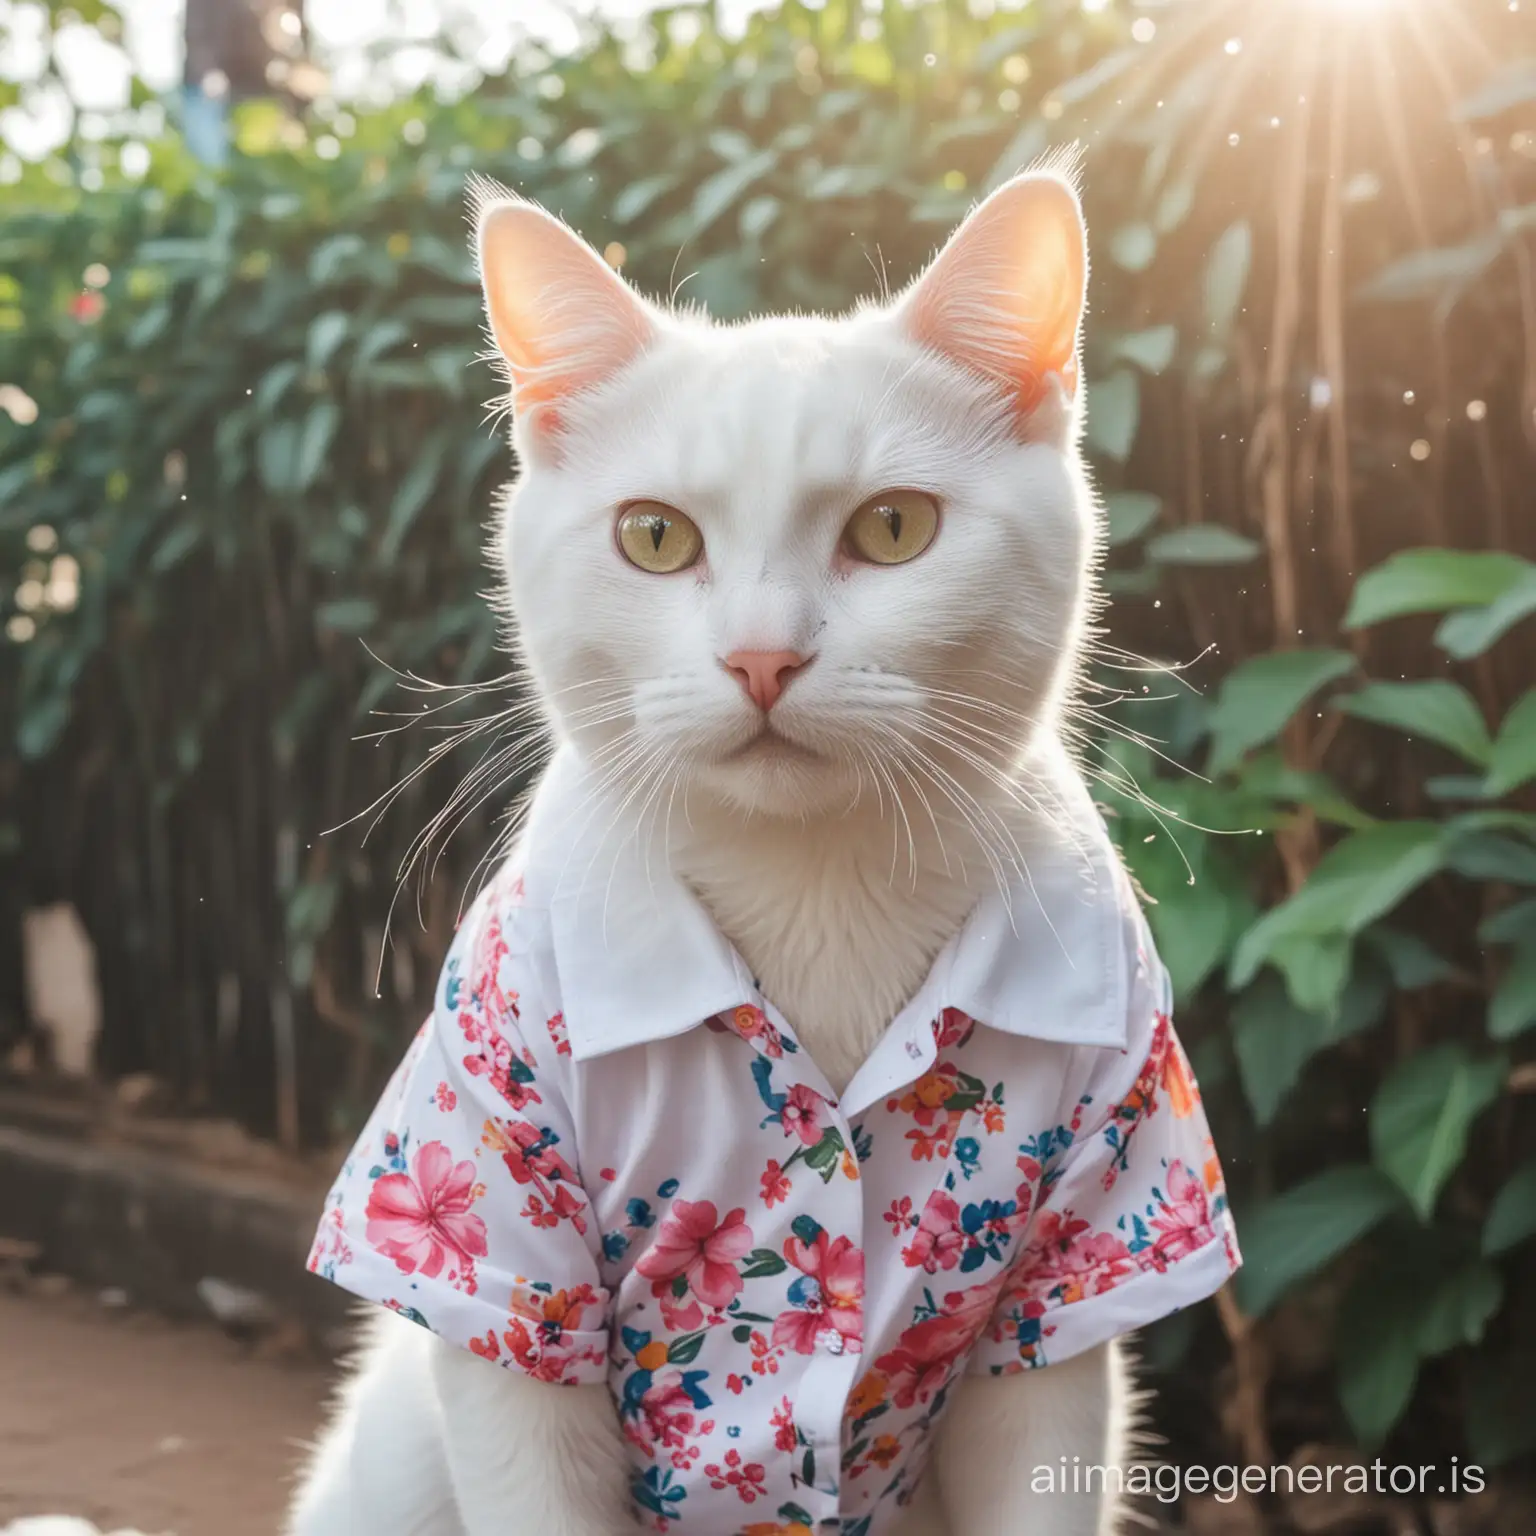 cute-white-cat-enjoy-wear-flower shirt-songkran